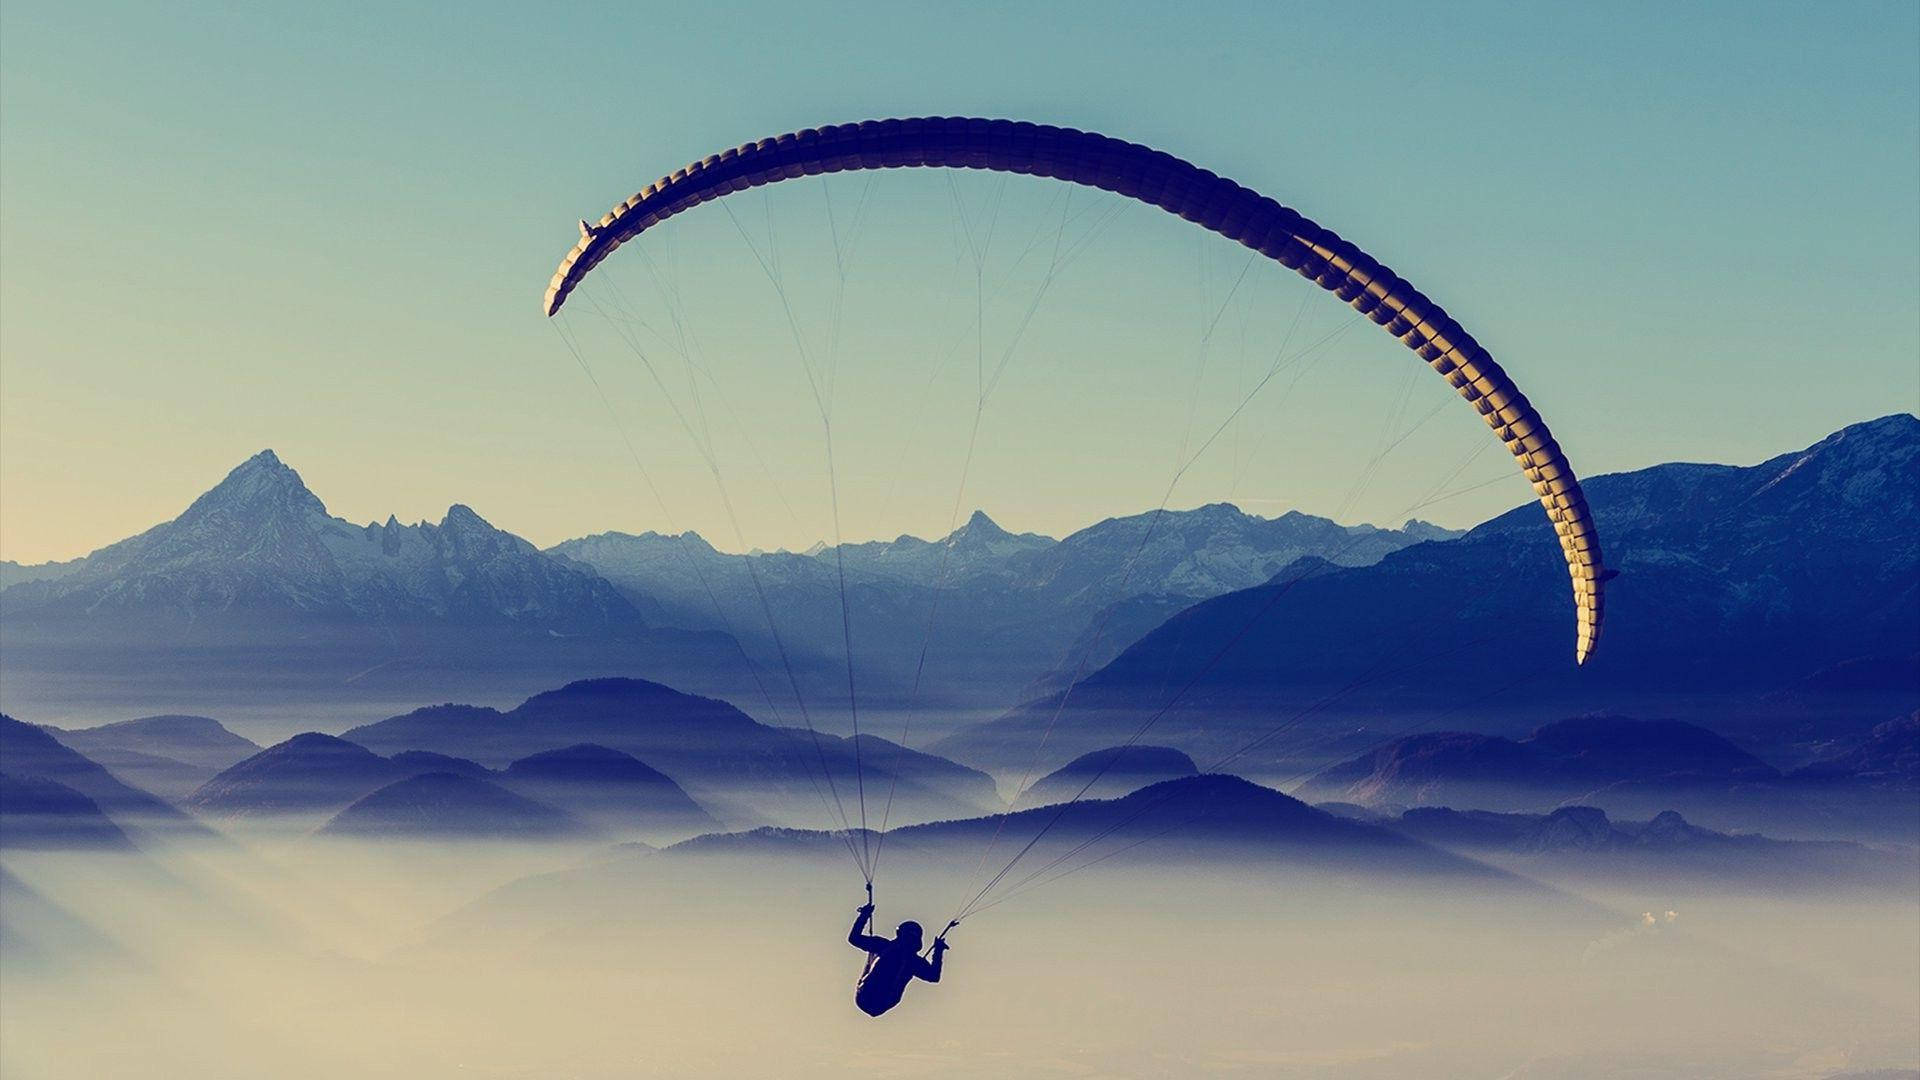 Professionel parasailing over et bjergområde Wallpaper